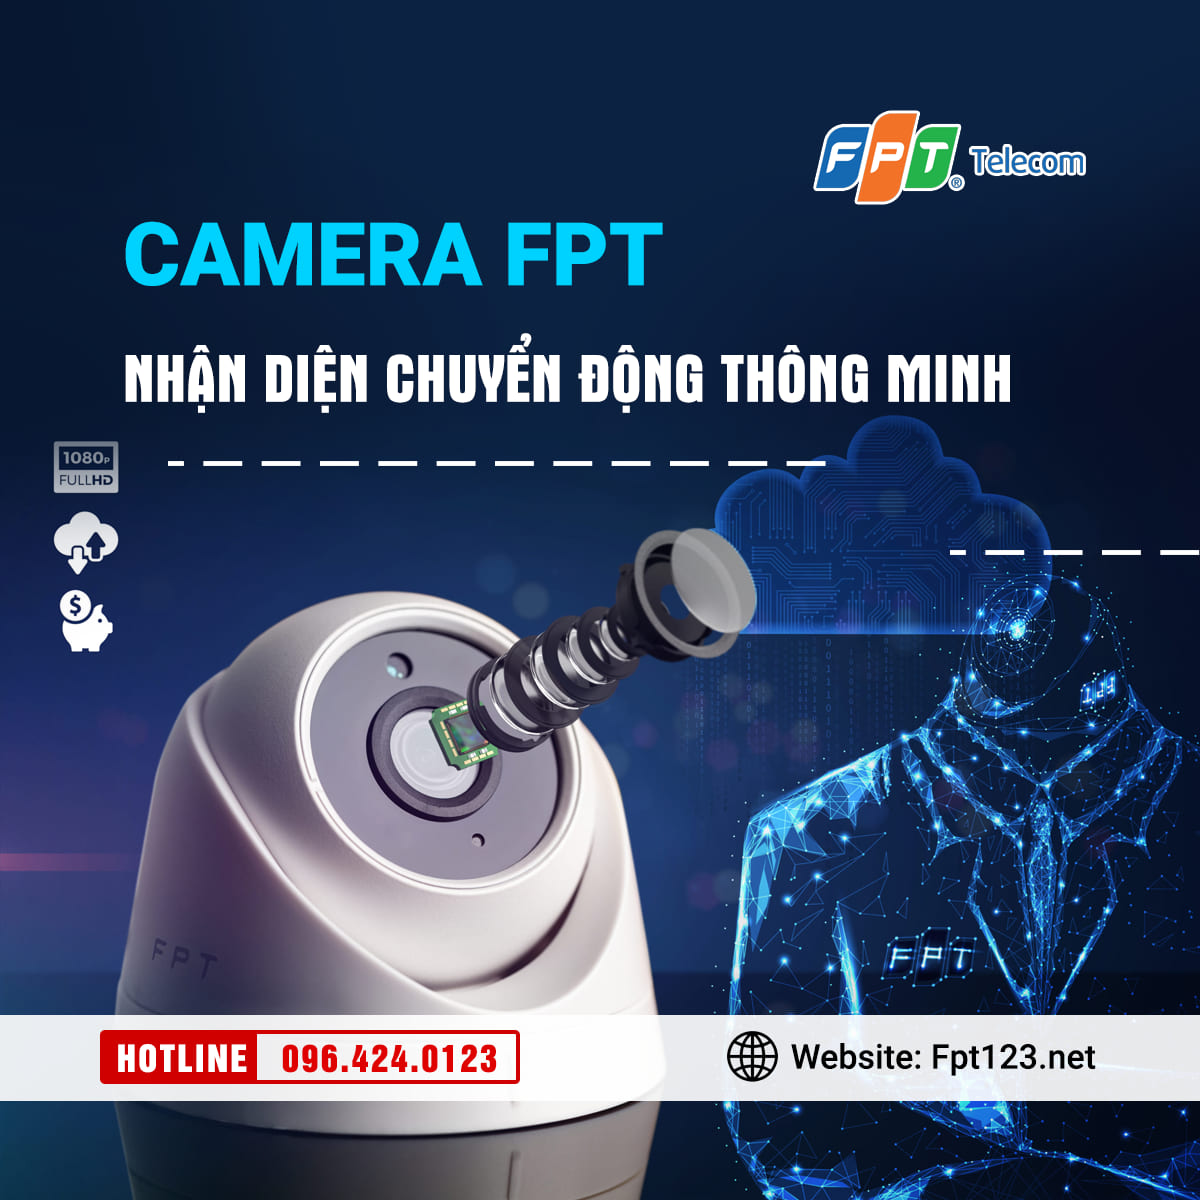 Camera FPT nhận diện chuyển động thông minh